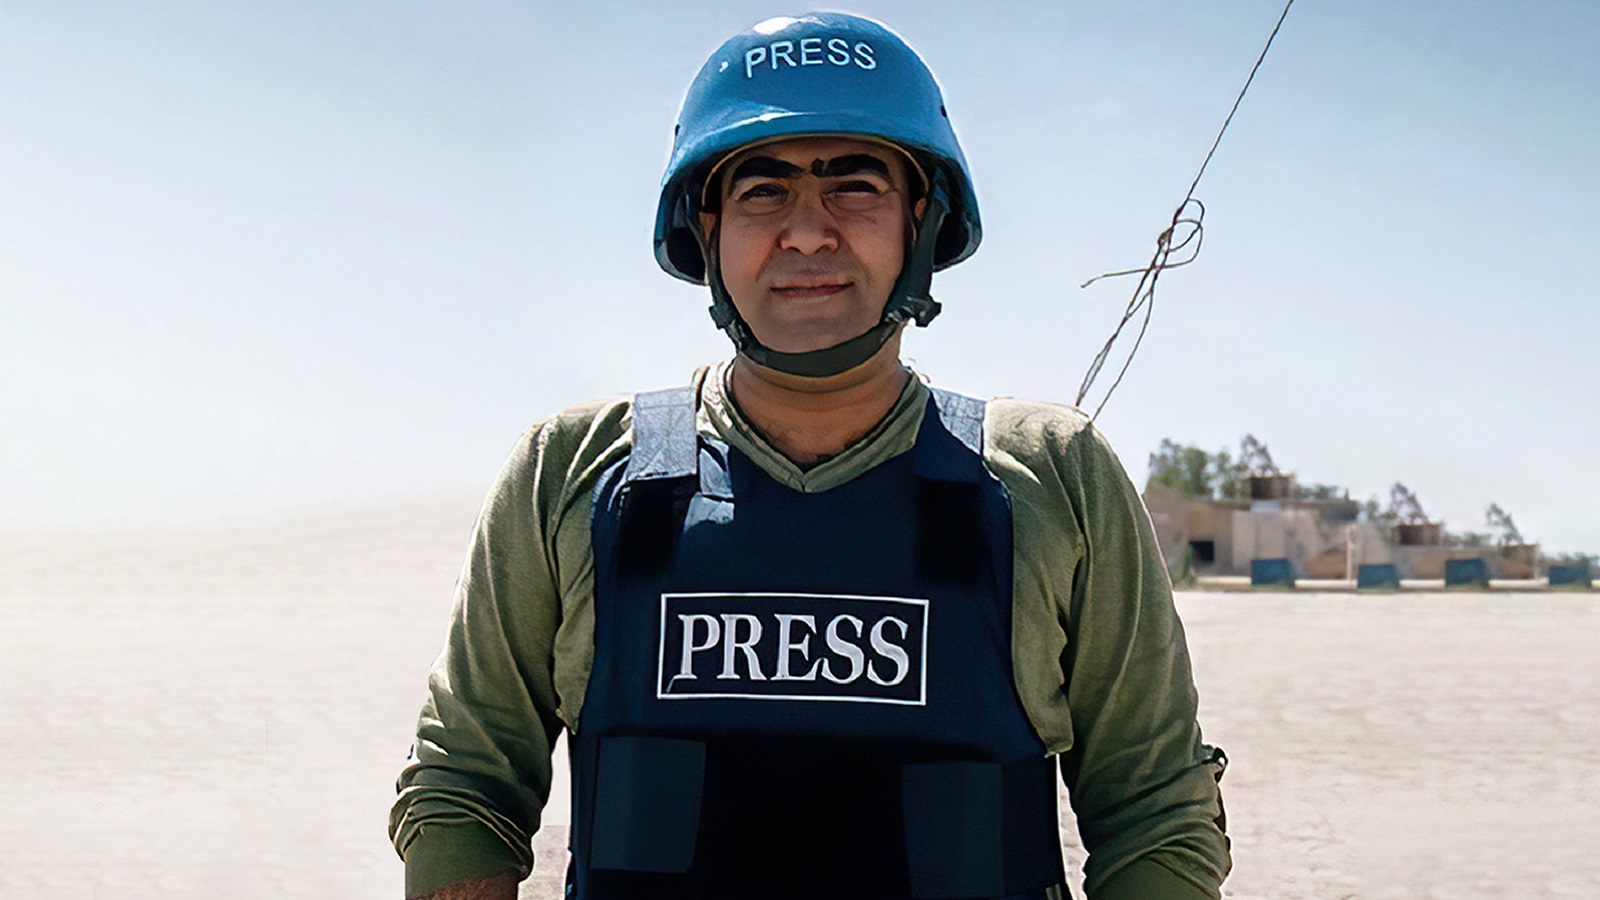 مراسلون بلا حدود: "قسد" تقمع الصحافيين بأساليب الجريمة المنظمة